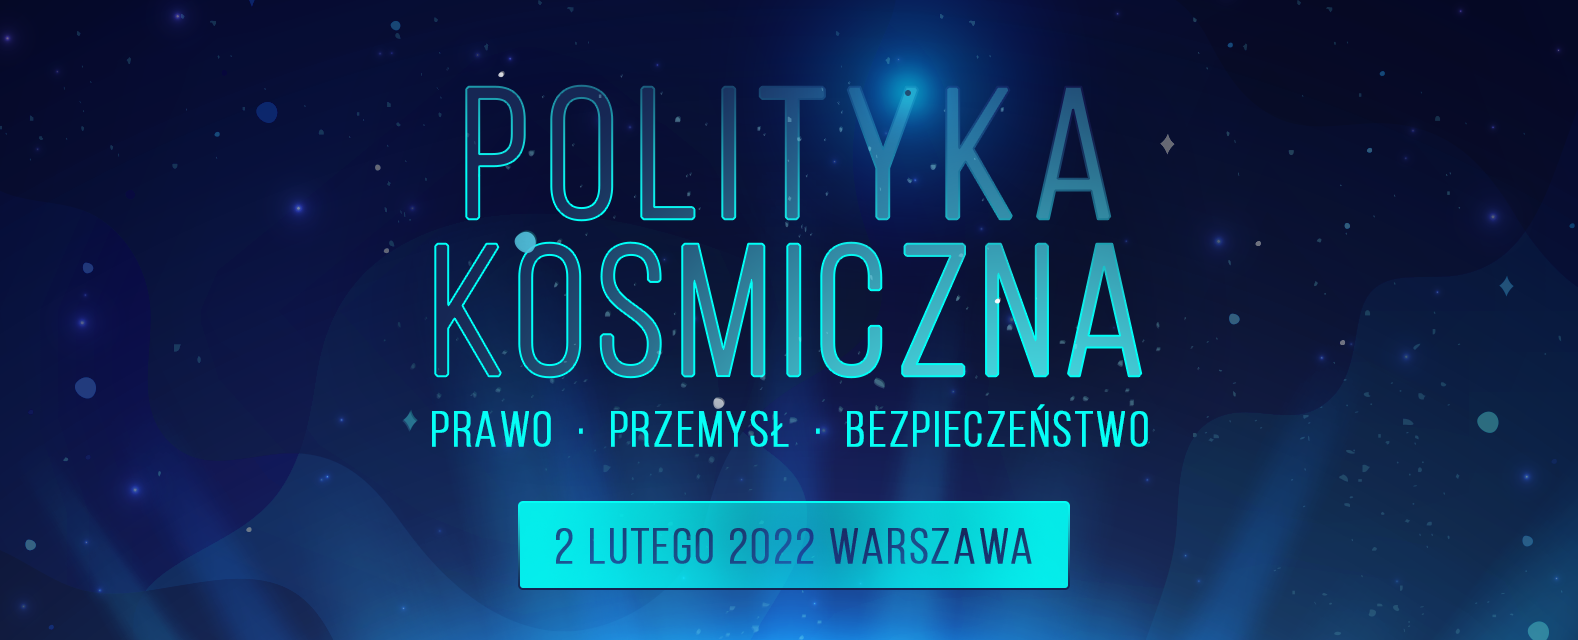 Konferencja Polityka kosmiczna – prawo, przemysł, bezpieczeństwo z udziałem POLSA